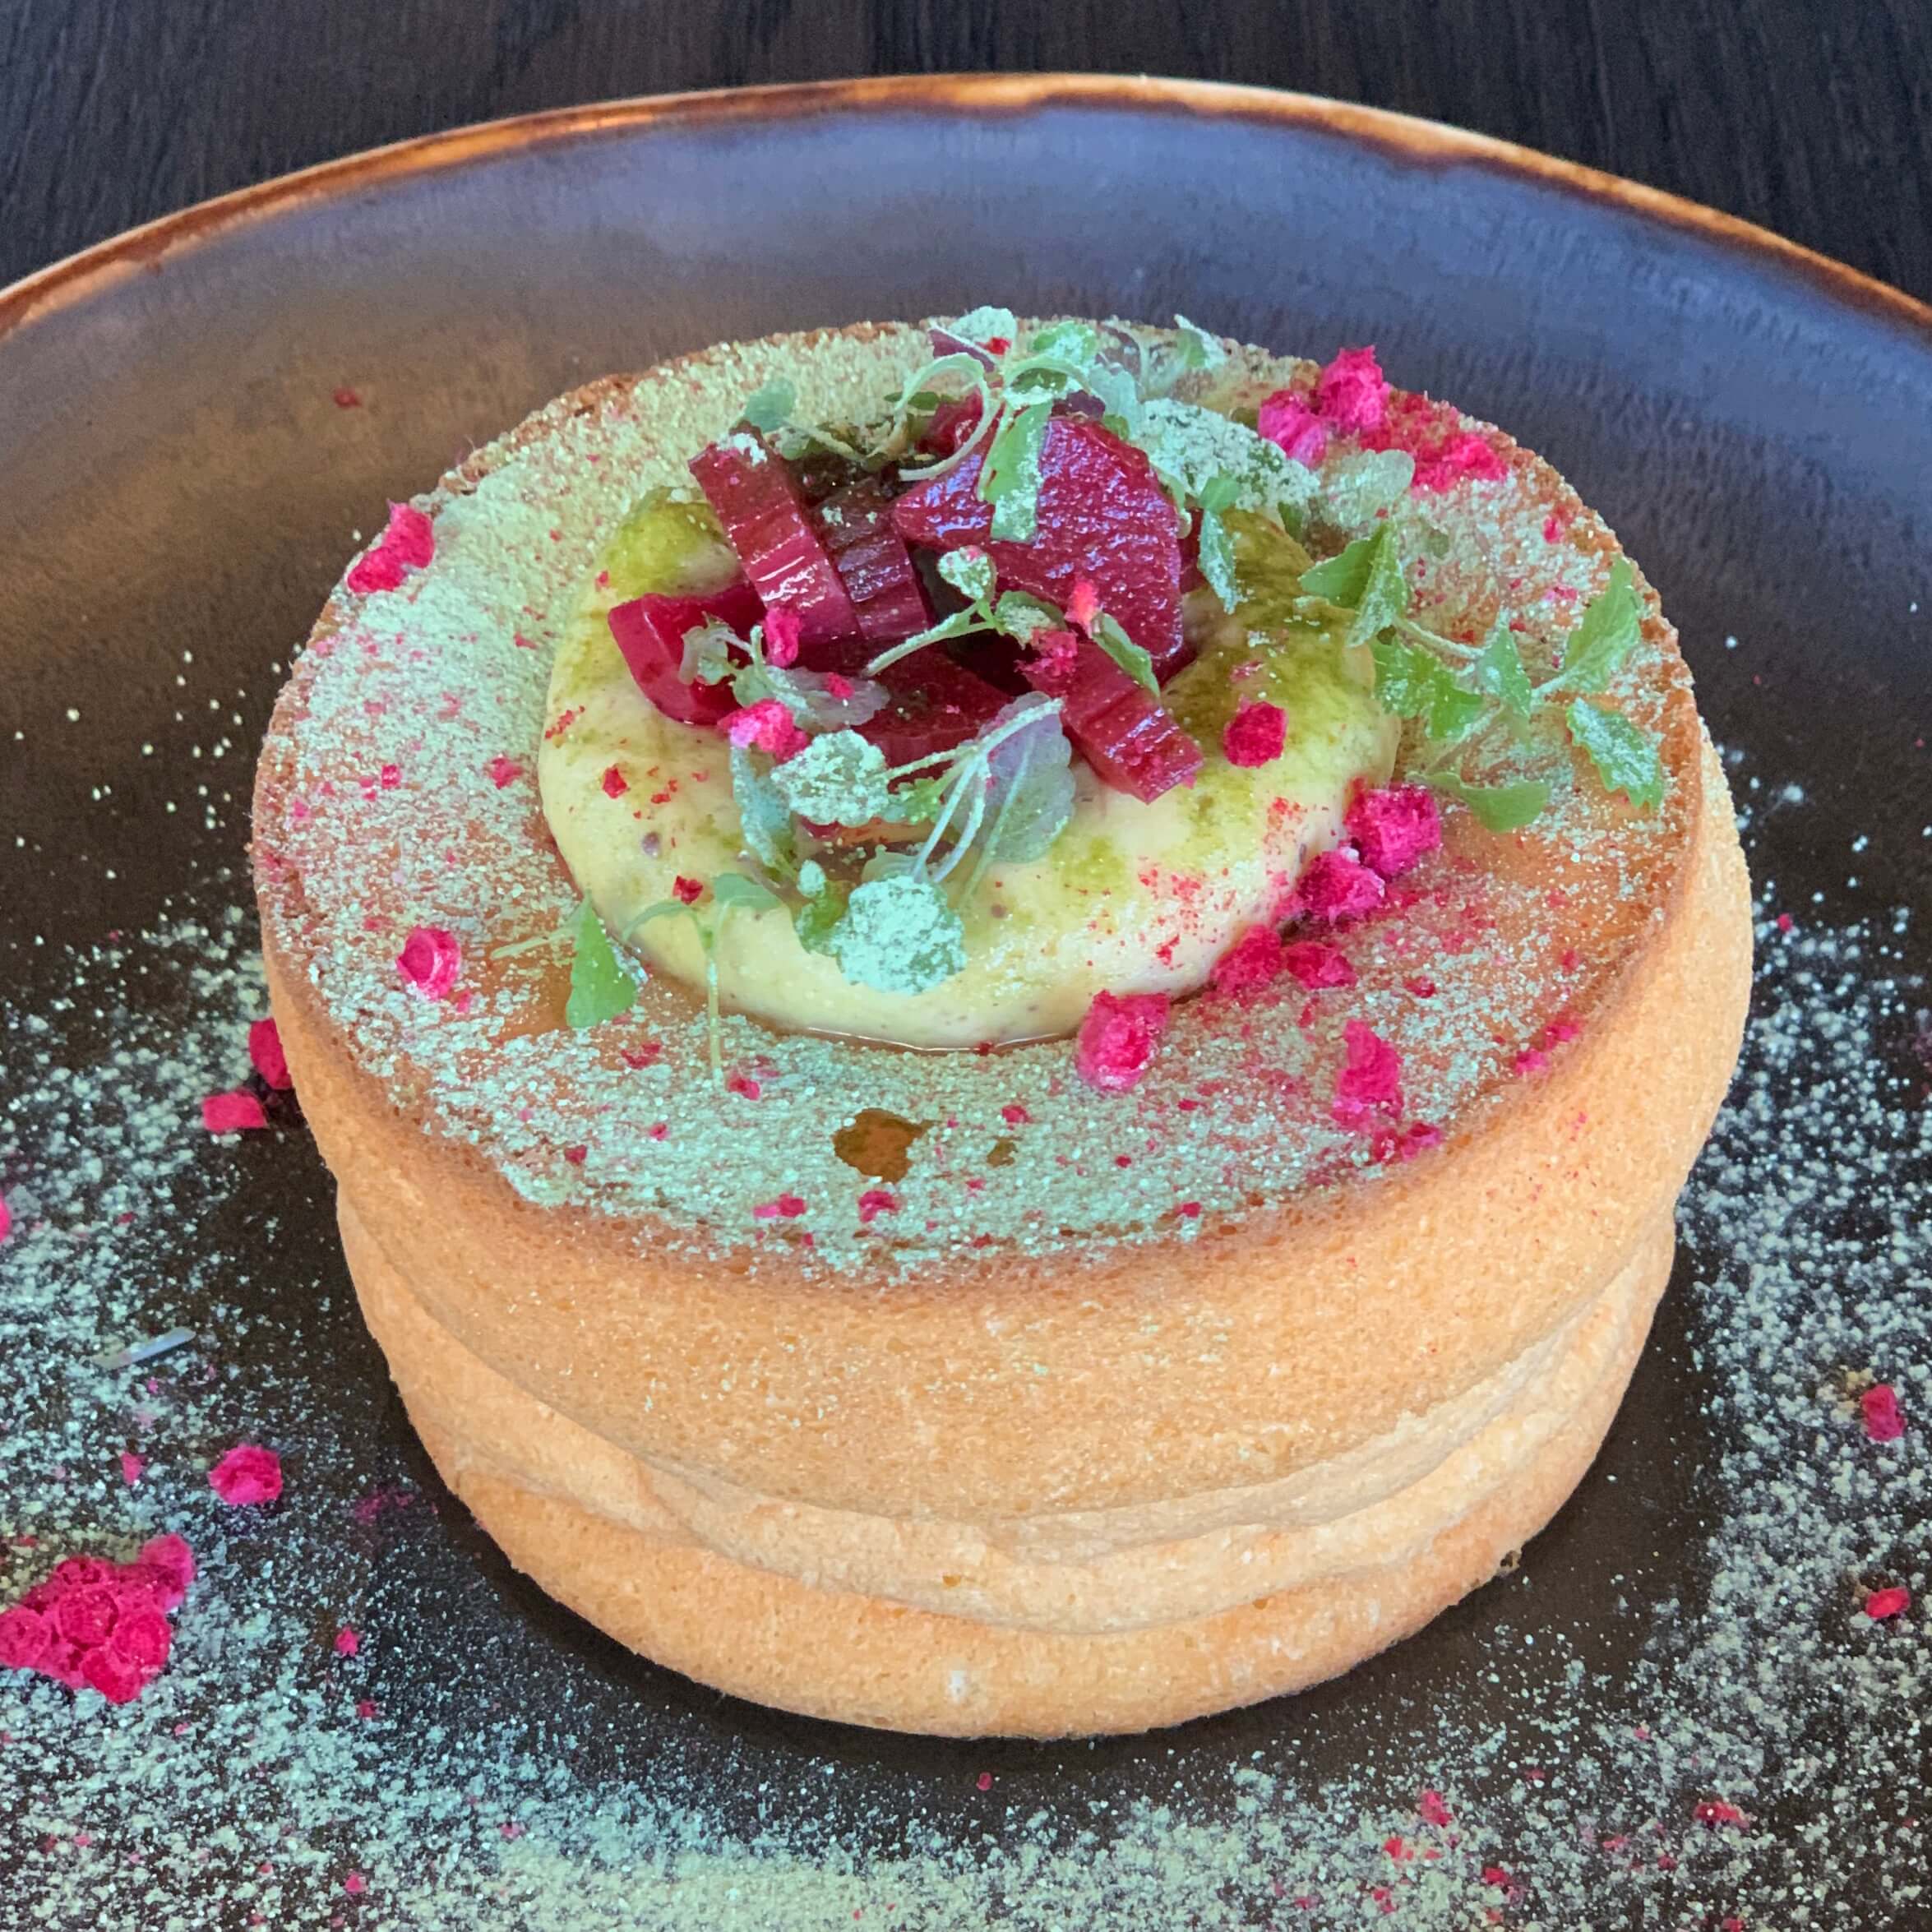 シドニーのカフェ【Edition Coffee Roasters】のメニュー「Japanese soufflé pancake（ジャパニーズ・スフレ・パンケーキ）」を撮影した写真